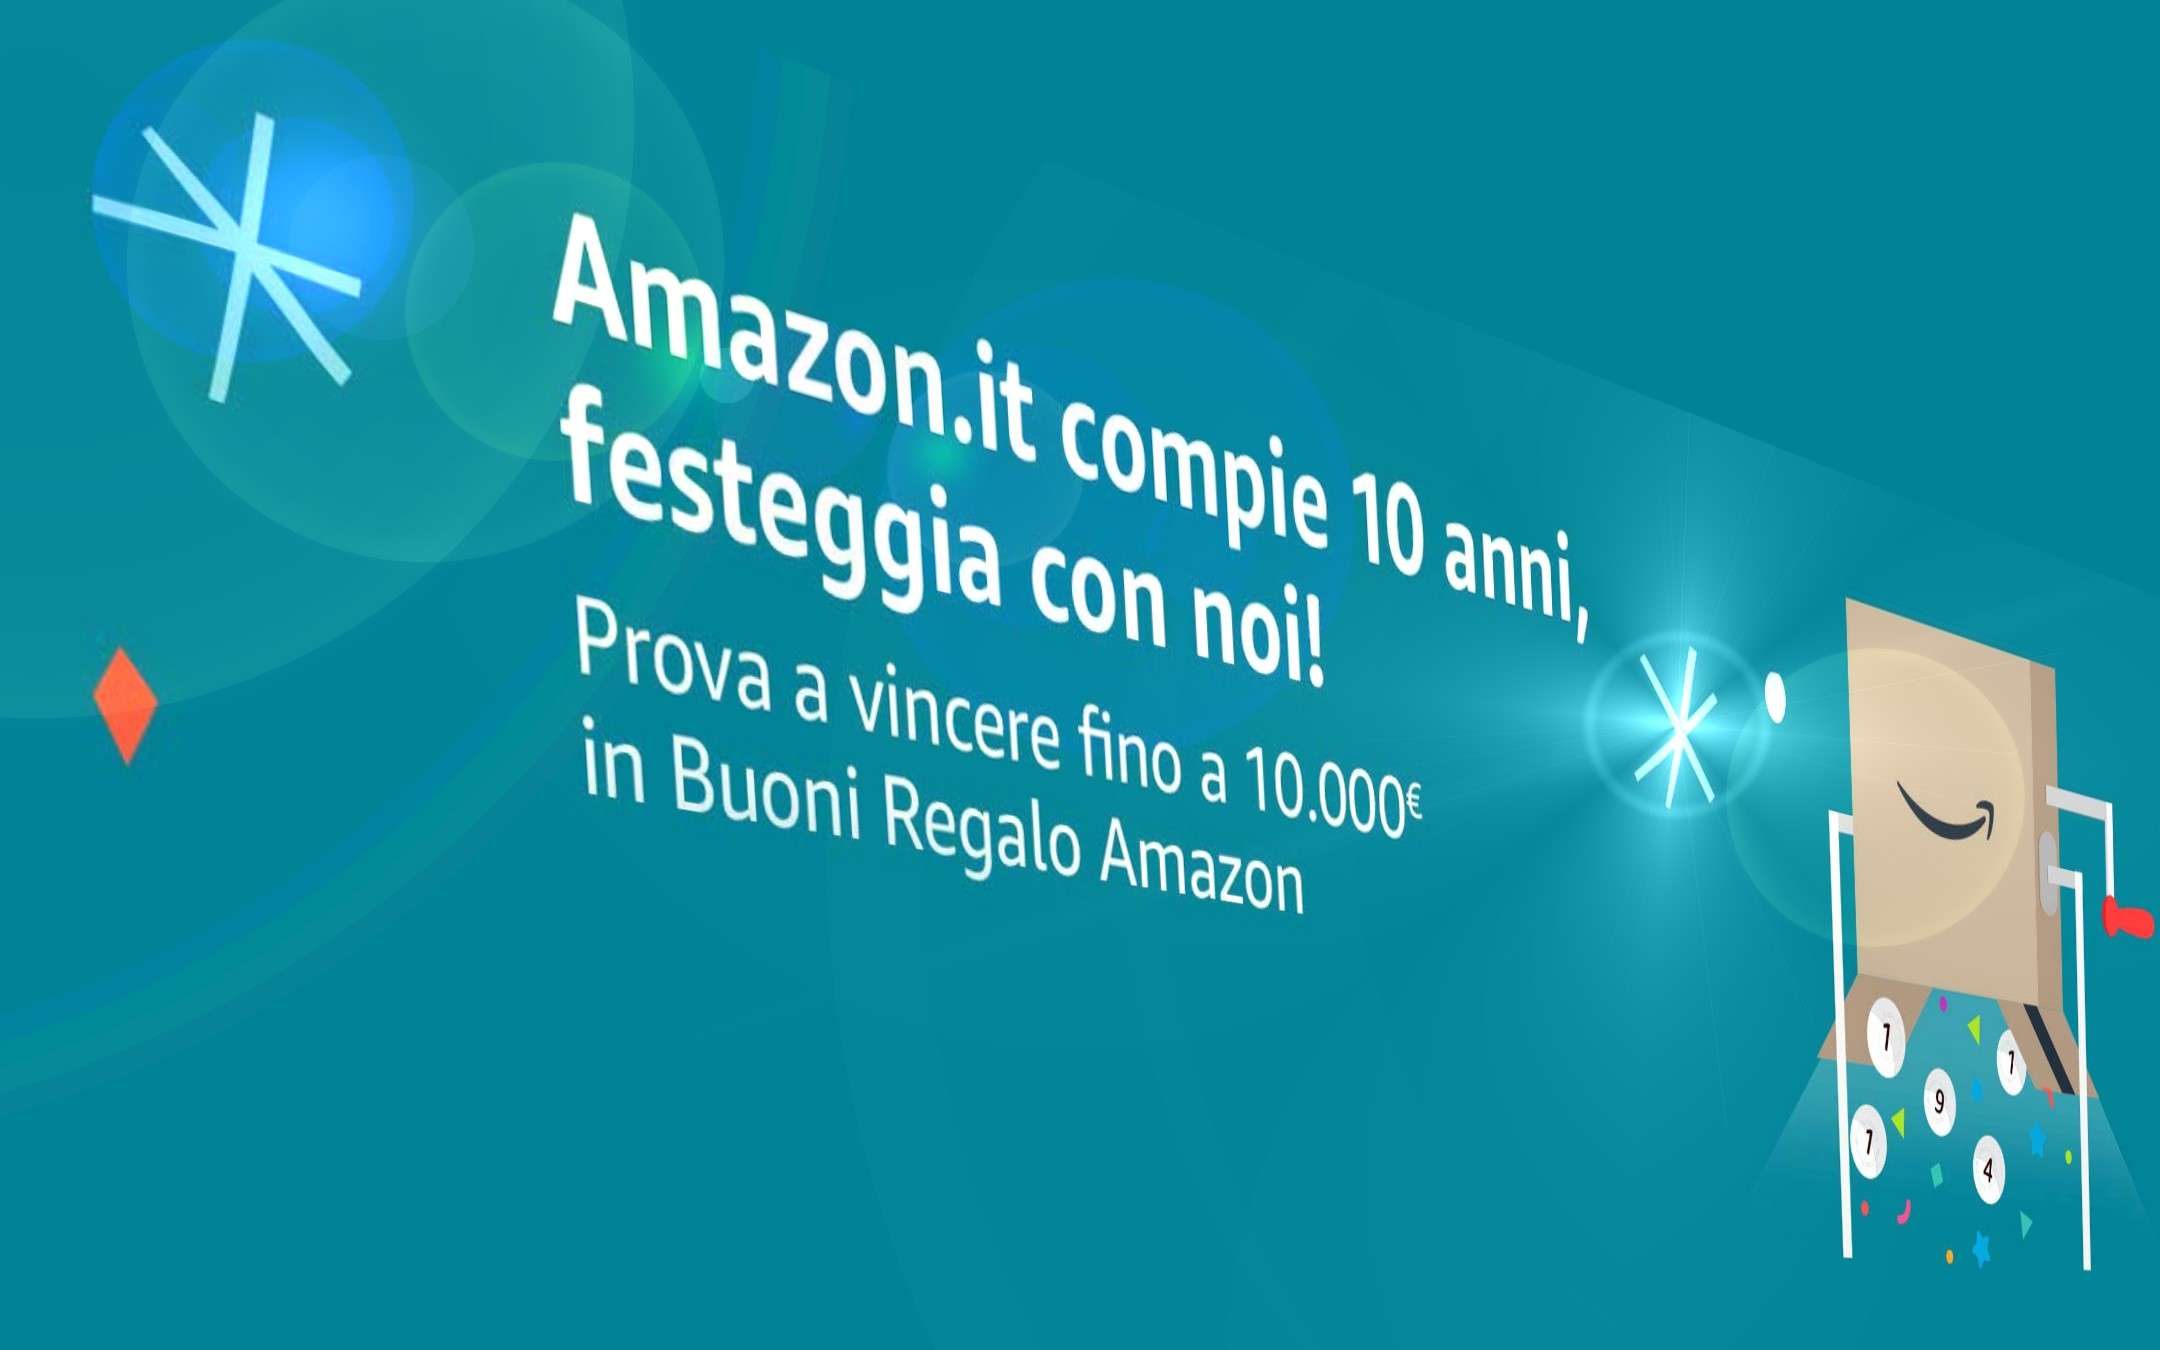 Amazon.it festeggia e regala fino a 10000 euro